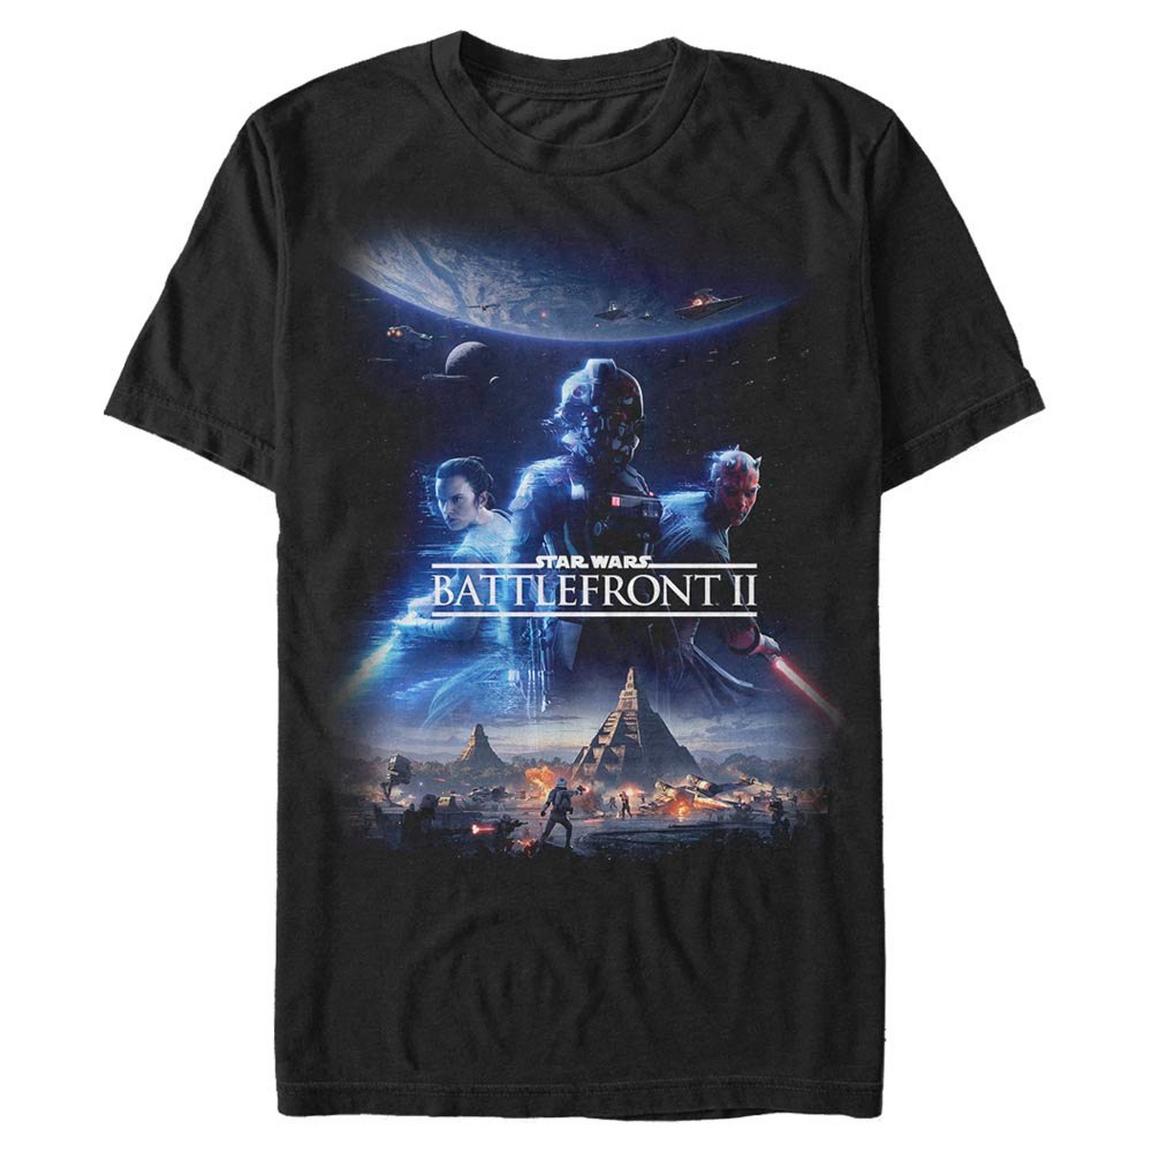 Star Wars Battlefront II Poster T-Shirt, Size: 2XL, Fifth Sun